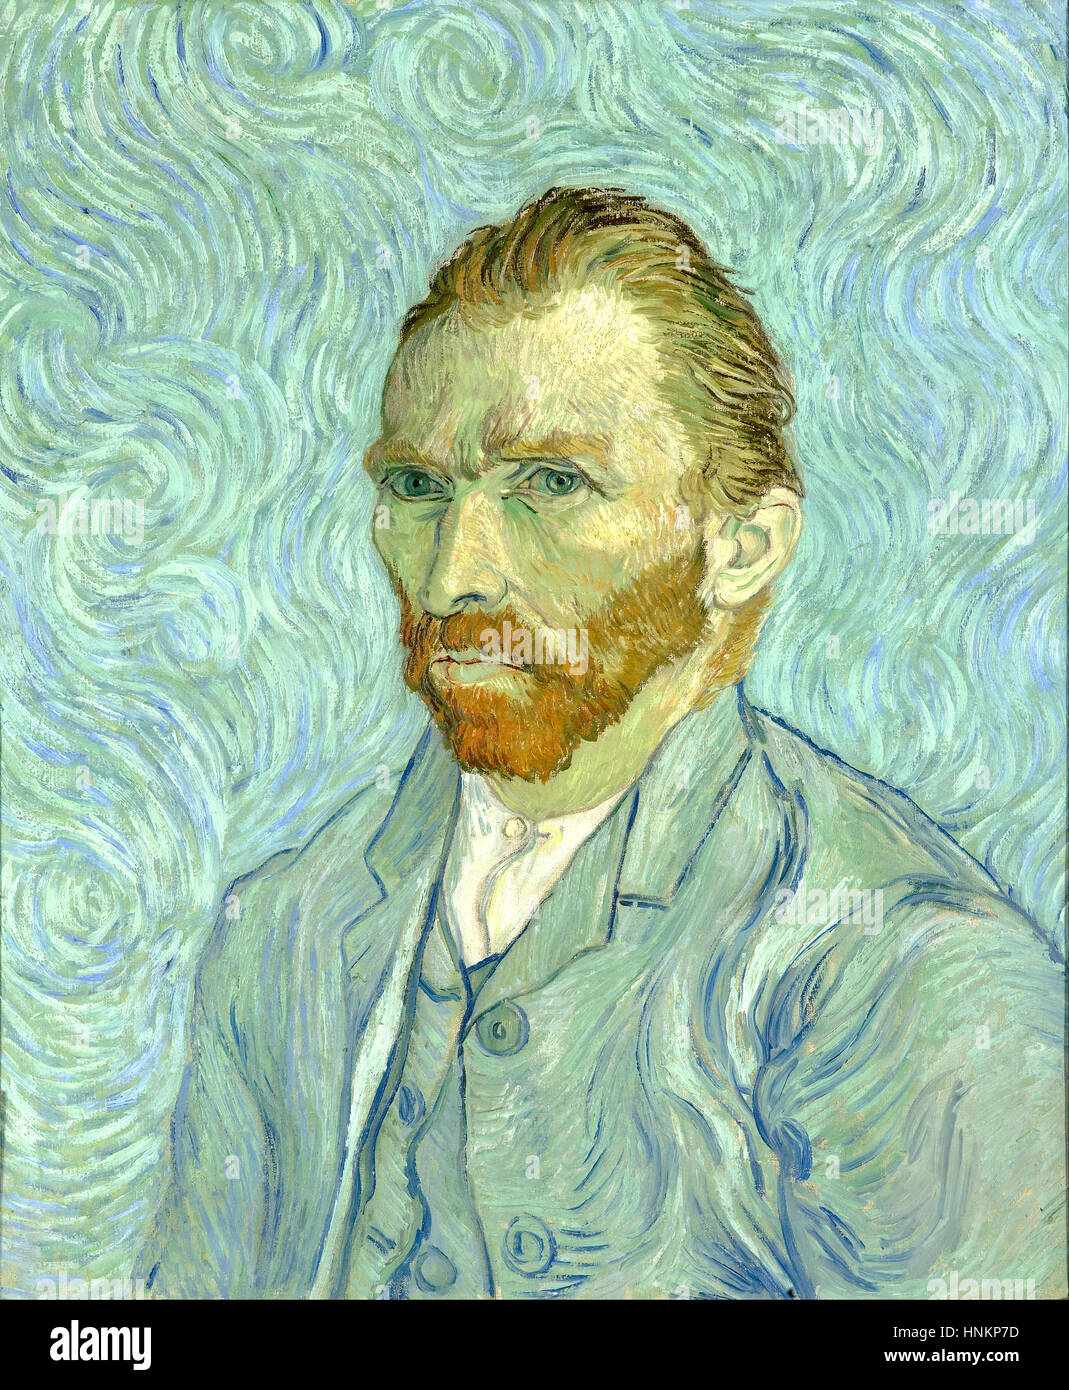 Vincent Willem van Gogh, olandese Post-Impressionist pittore che è tra i più famosi e figure influenti nella storia dell'arte occidentale. Foto Stock